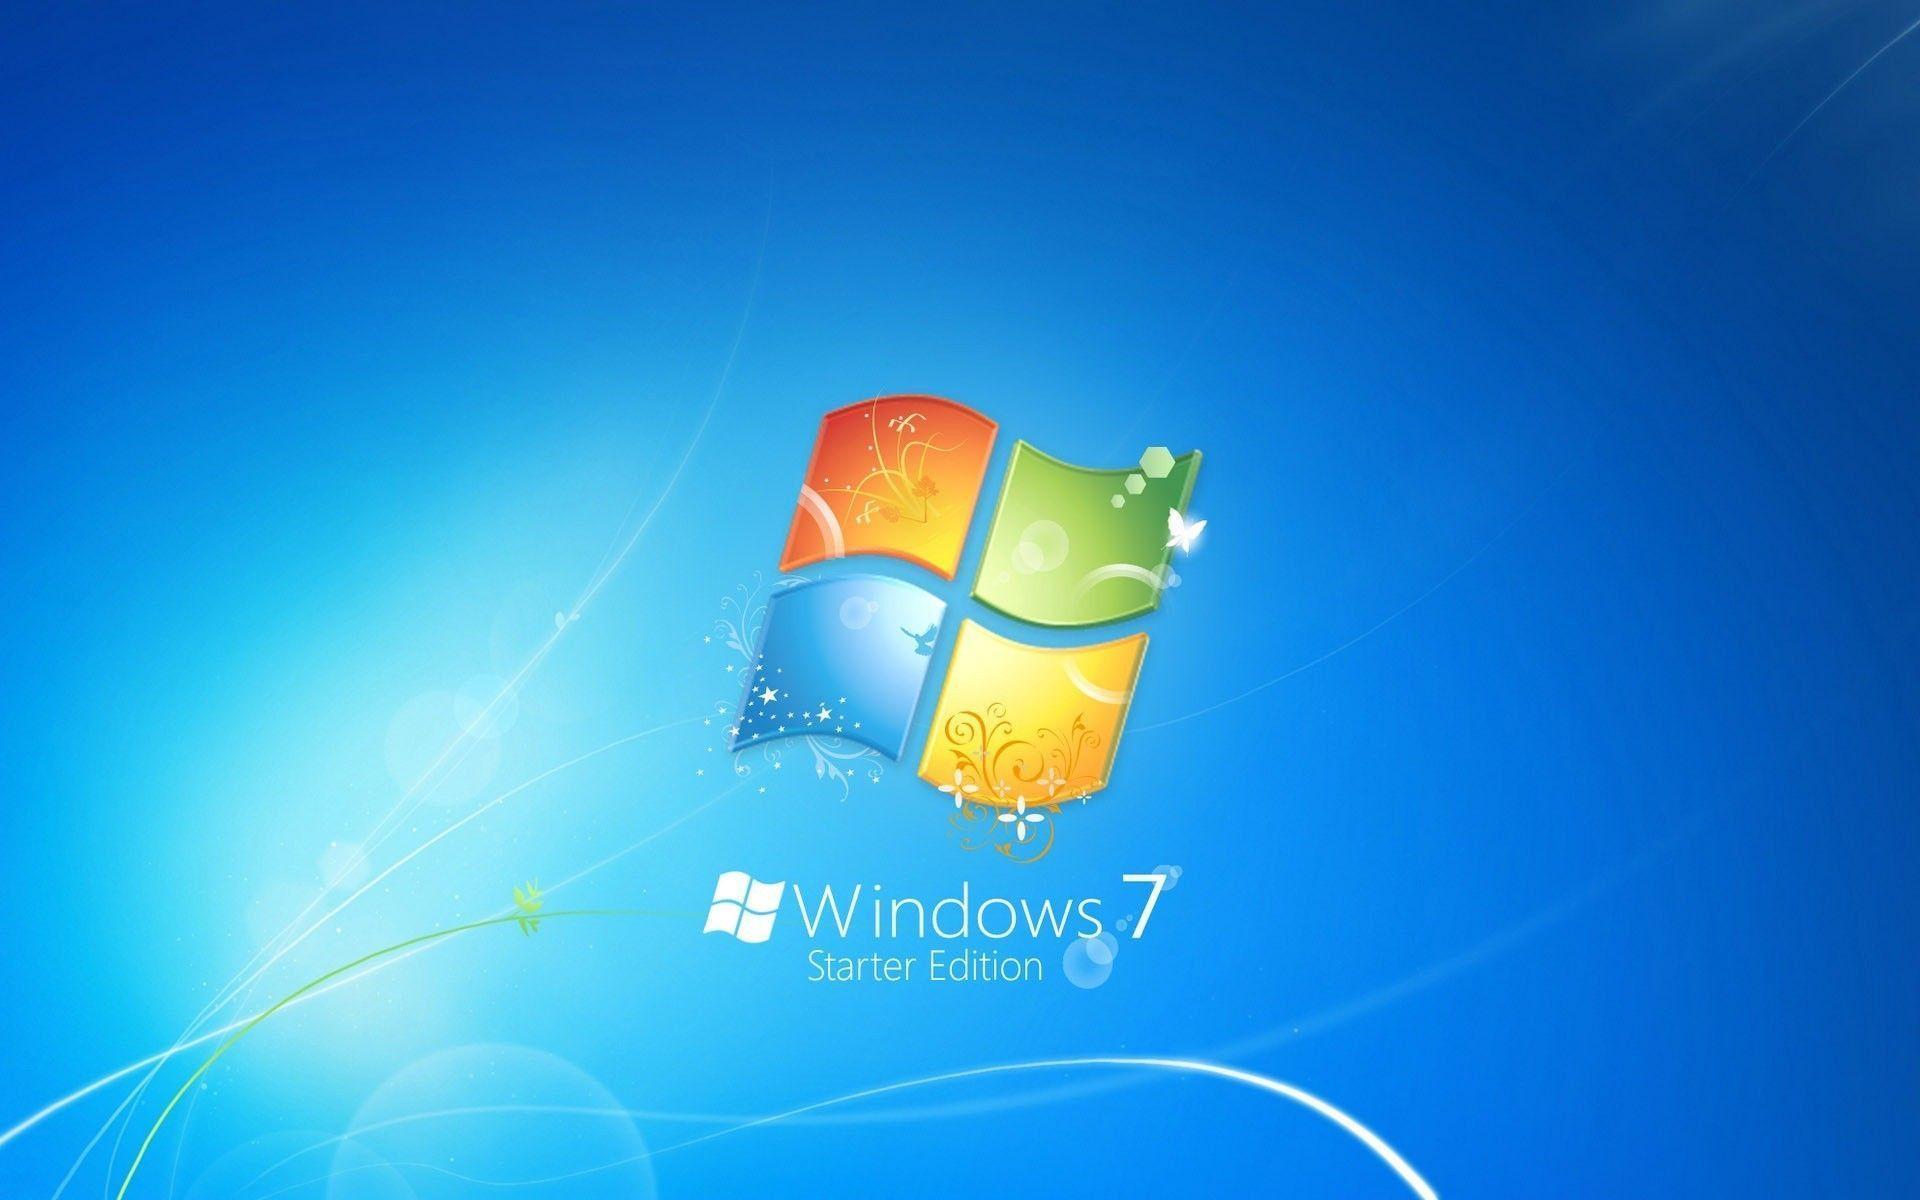 Background Logo Blue Windows7 Theme Image 198972